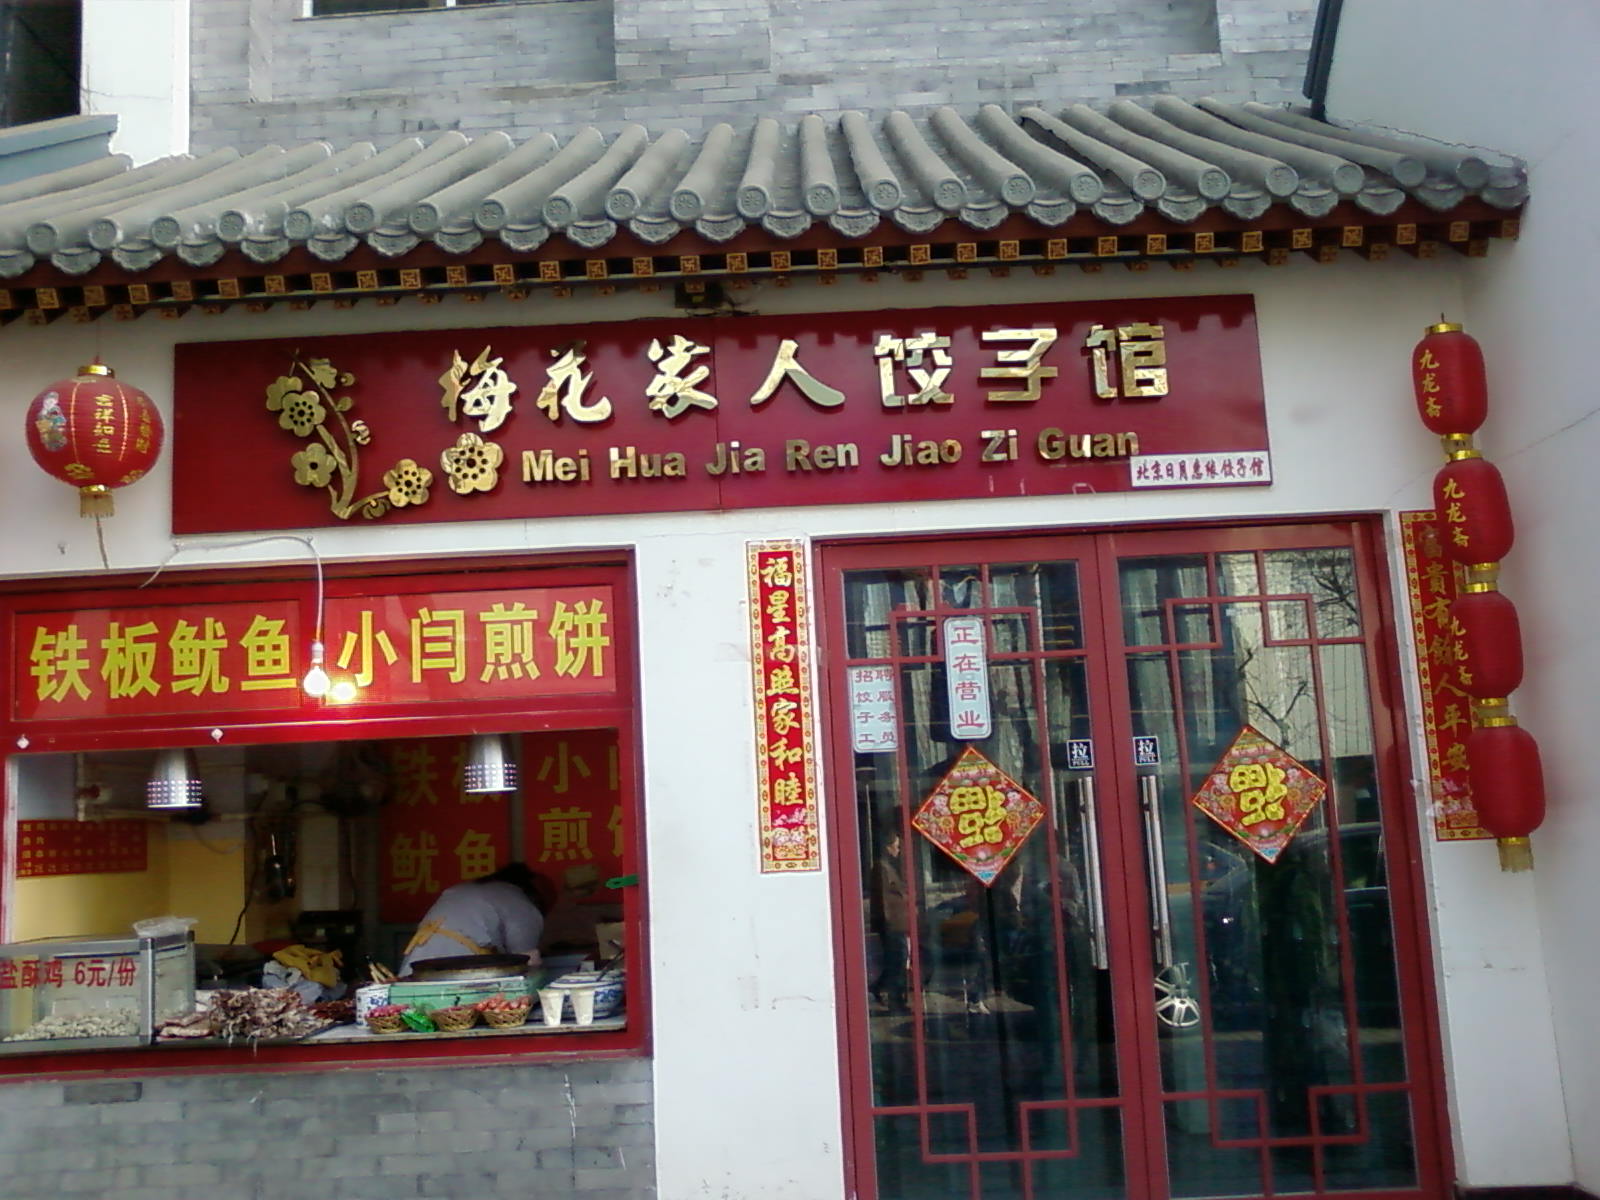 這裡是餃子館總店，屋頂很有老北京風味吧